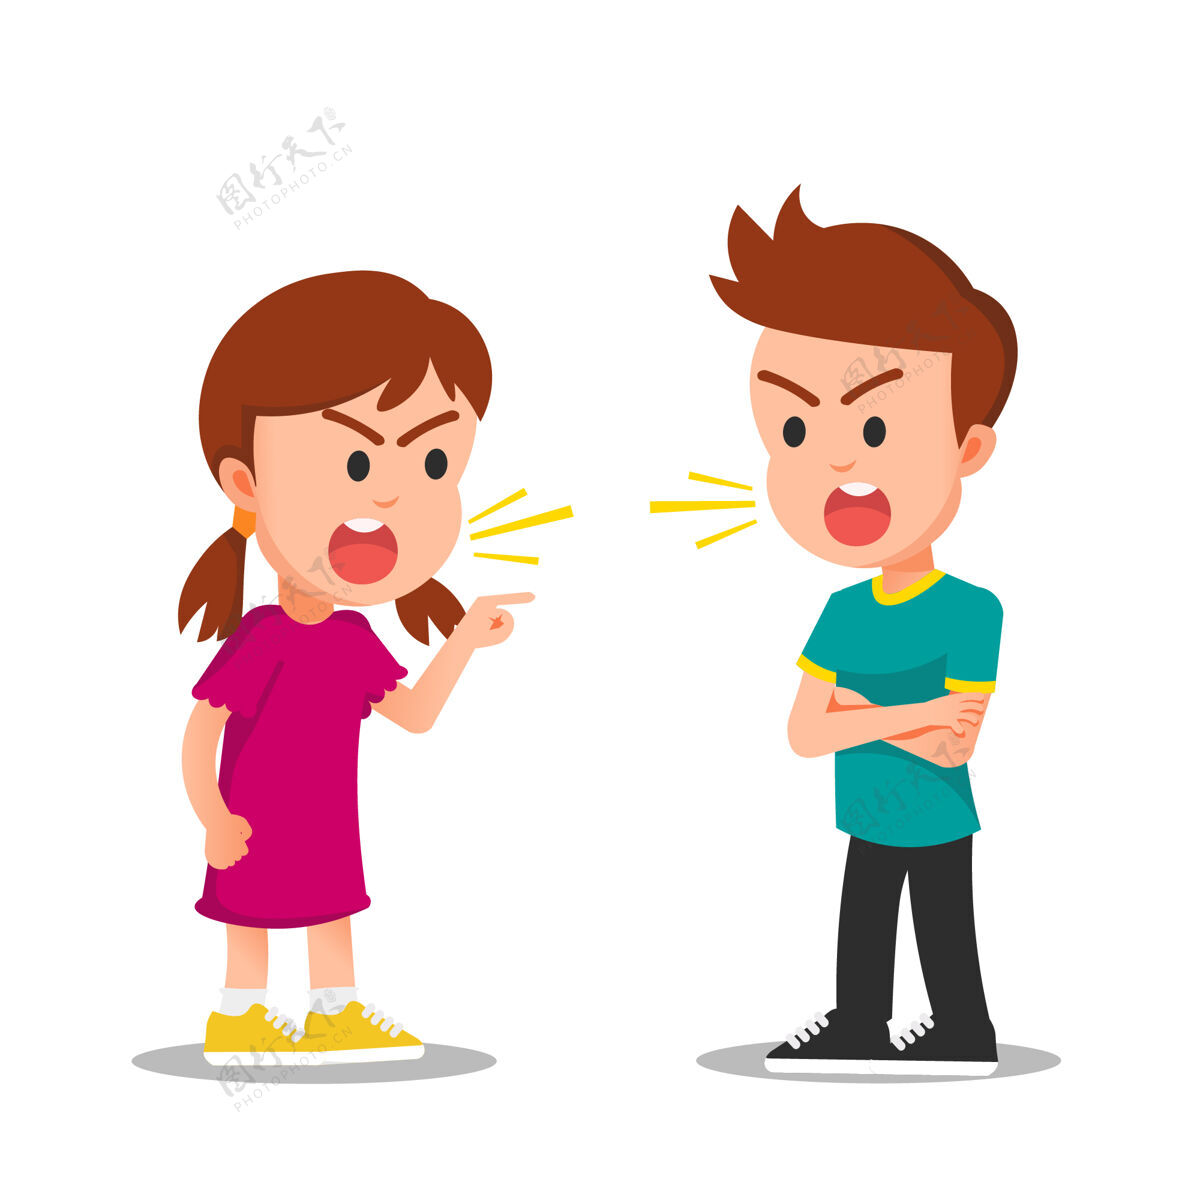 争吵女孩和男孩用愤怒的脸打架或争吵男孩争论争斗